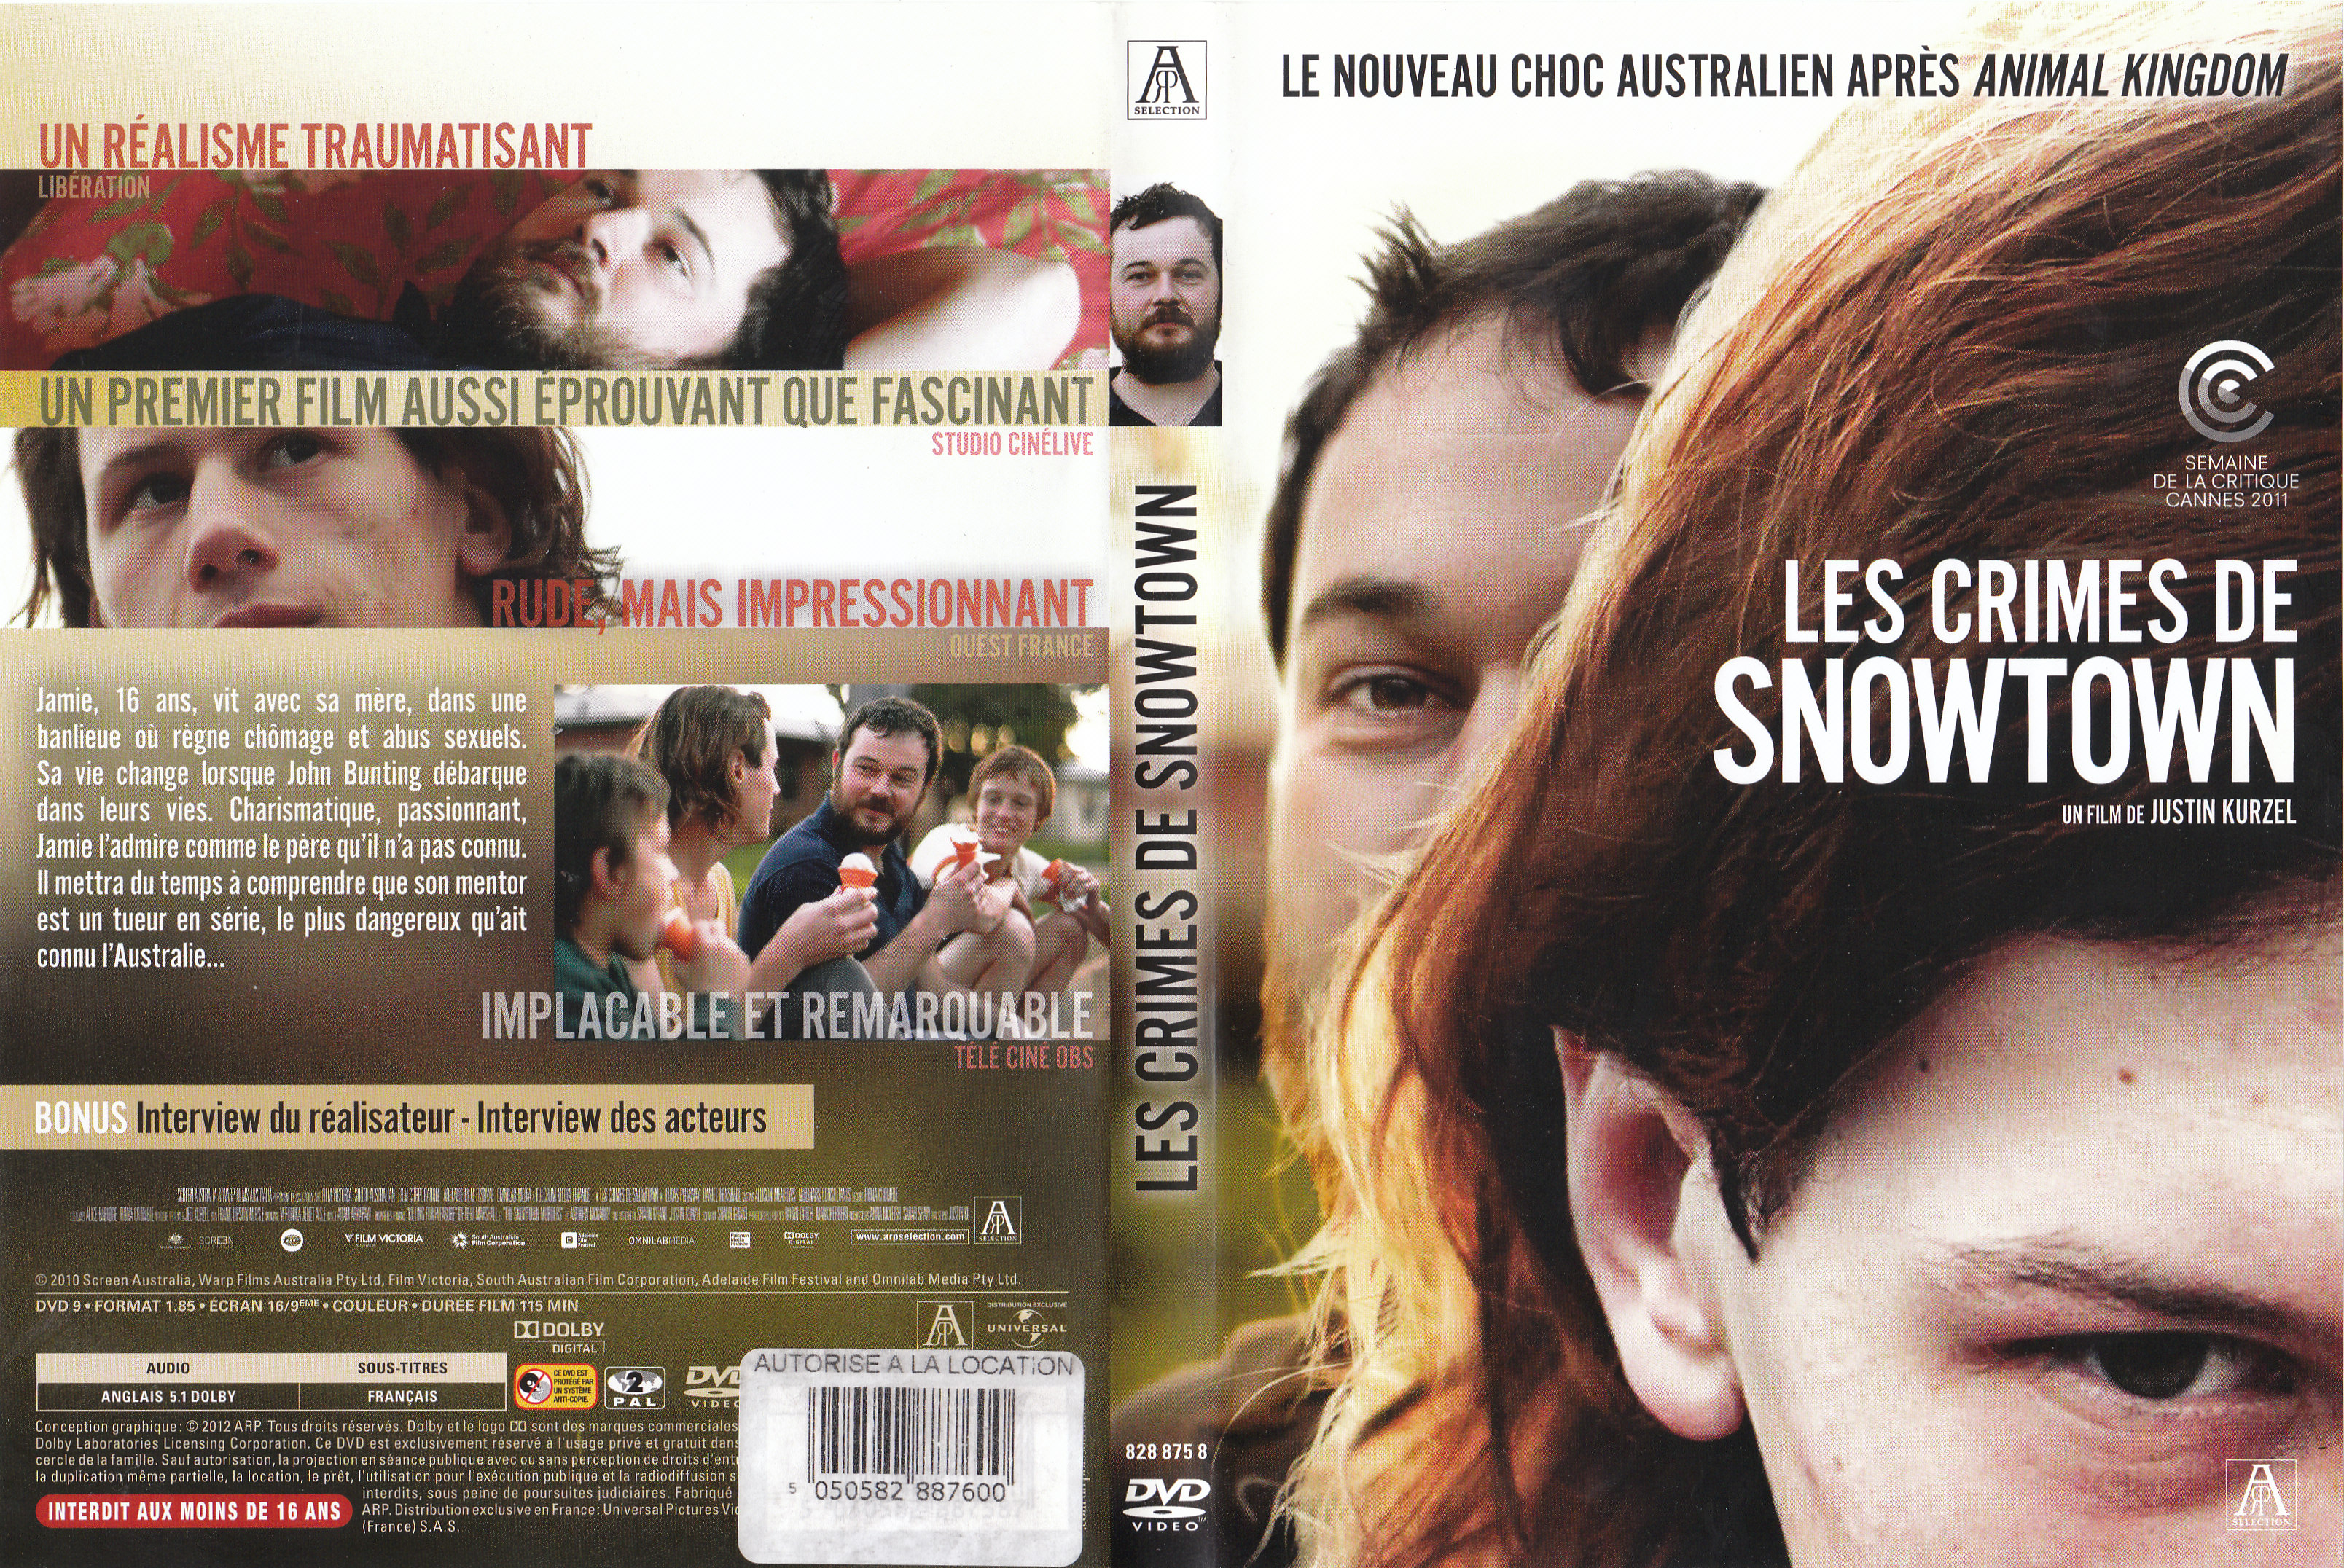 Jaquette DVD Les crimes de snowtown